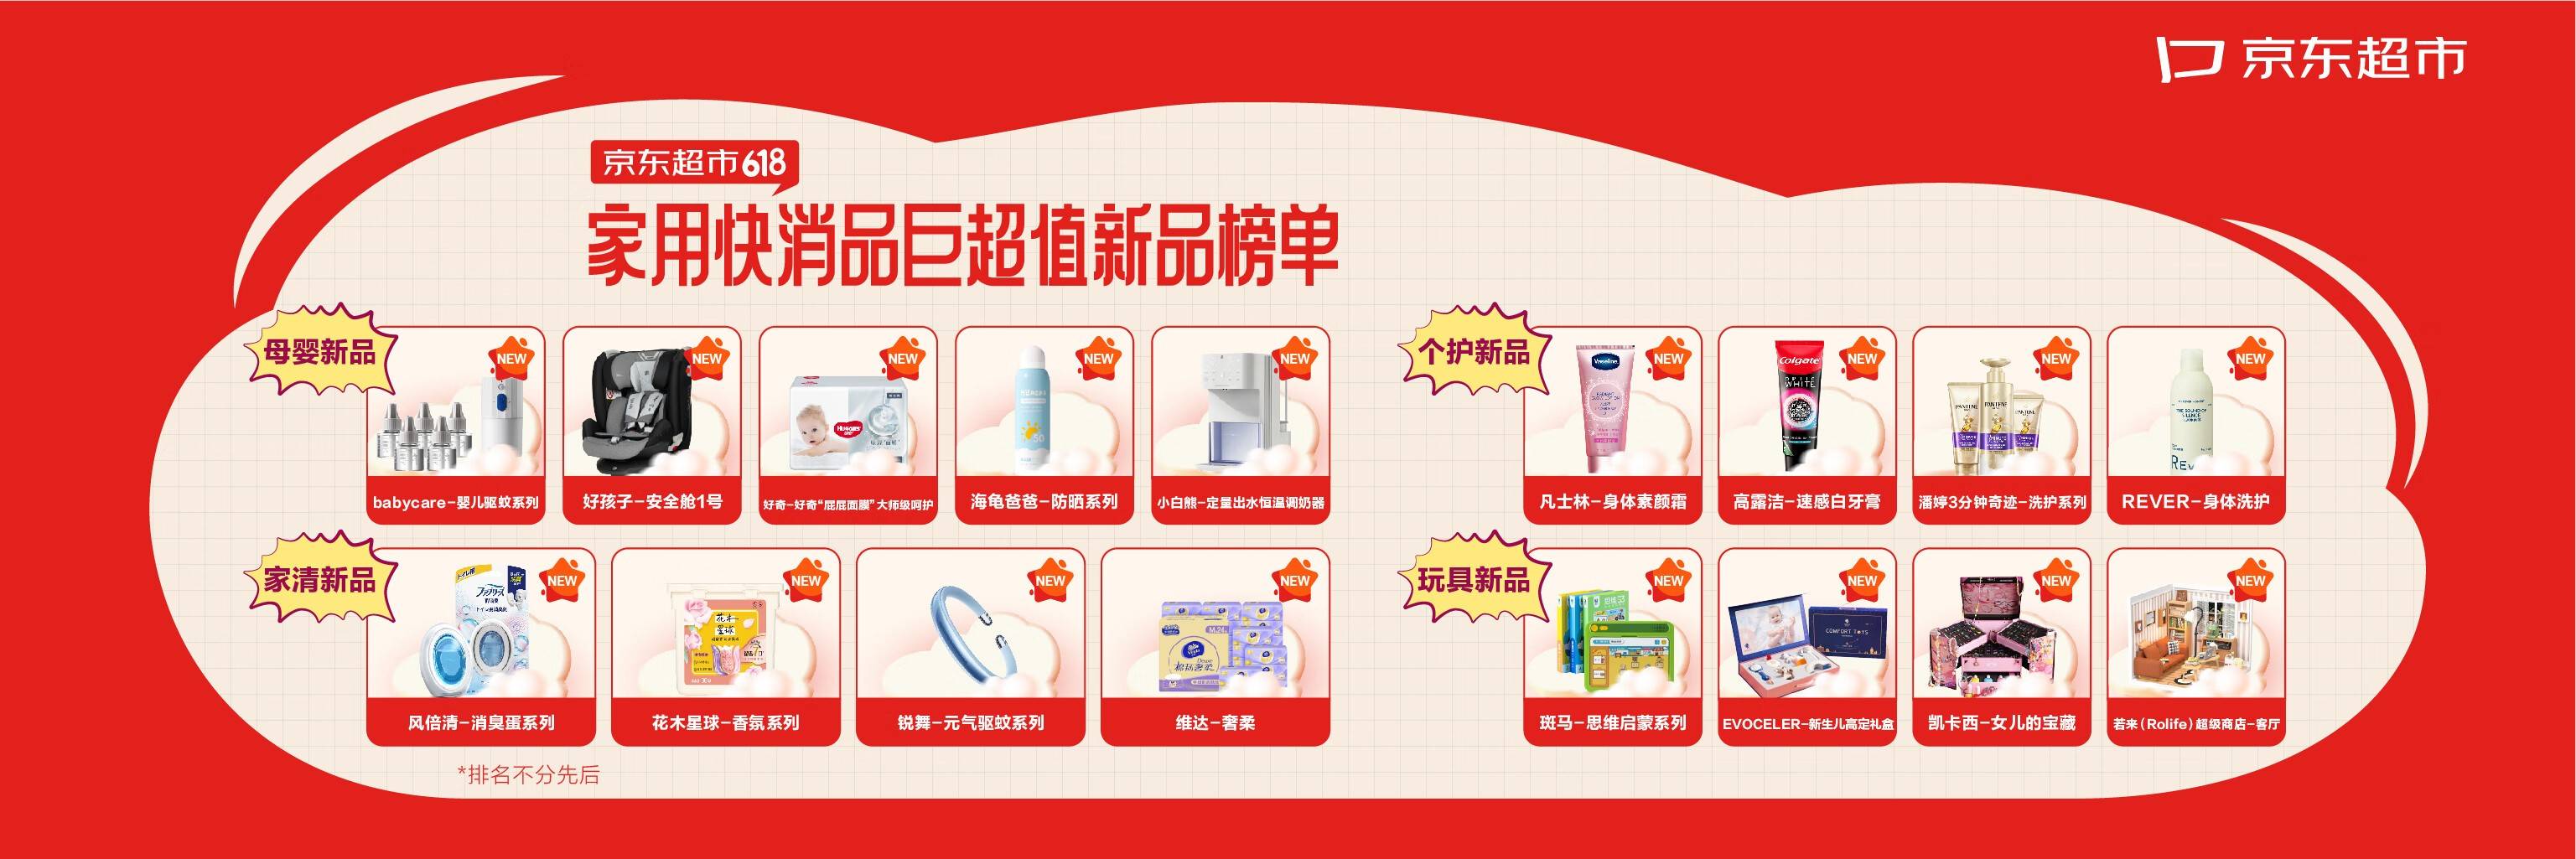 京东超市首次公布选品方法论 34款新品、爆品入选家用快消品618最值得购买榜单-最极客